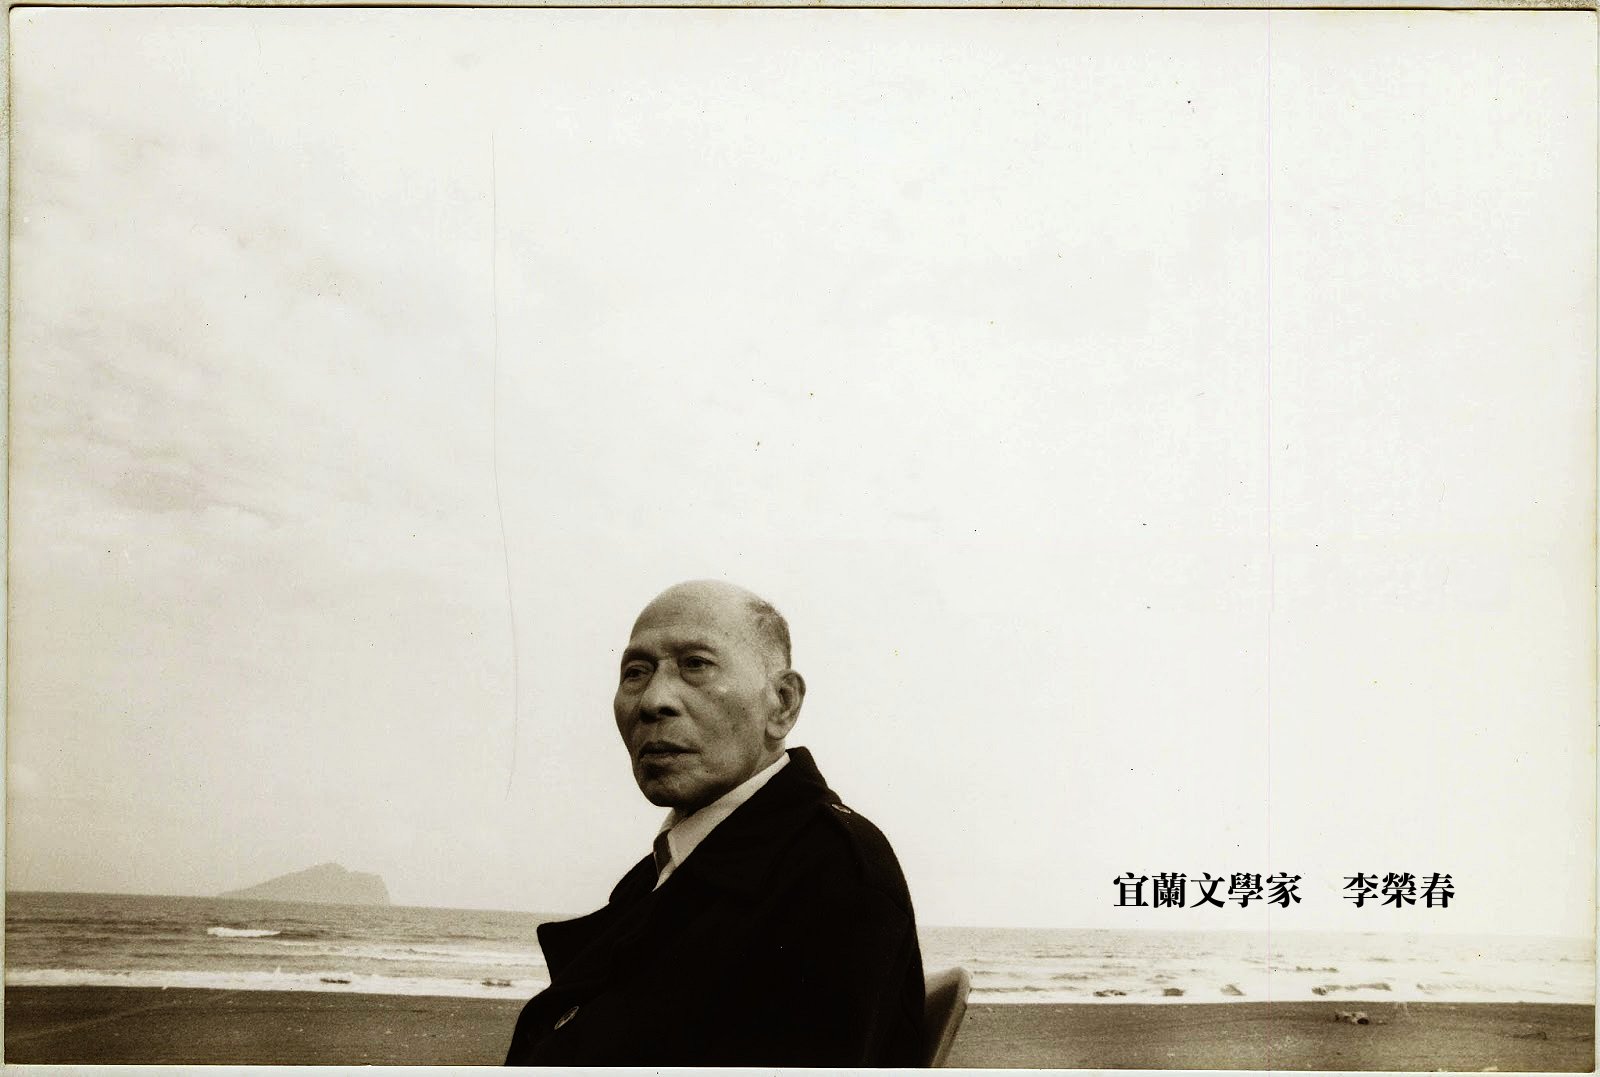 圖 宜蘭文學家 李榮春 遠方為龜山島  翻拍自鎮史館